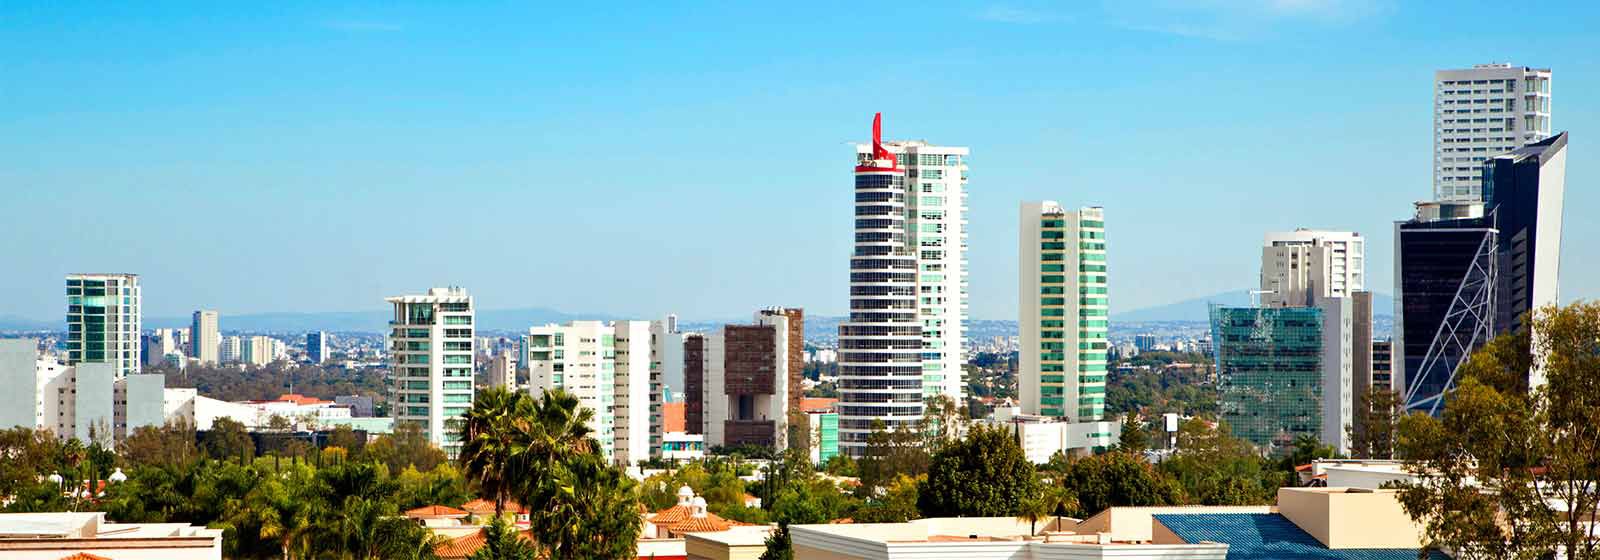 View of Guadalajara skyline